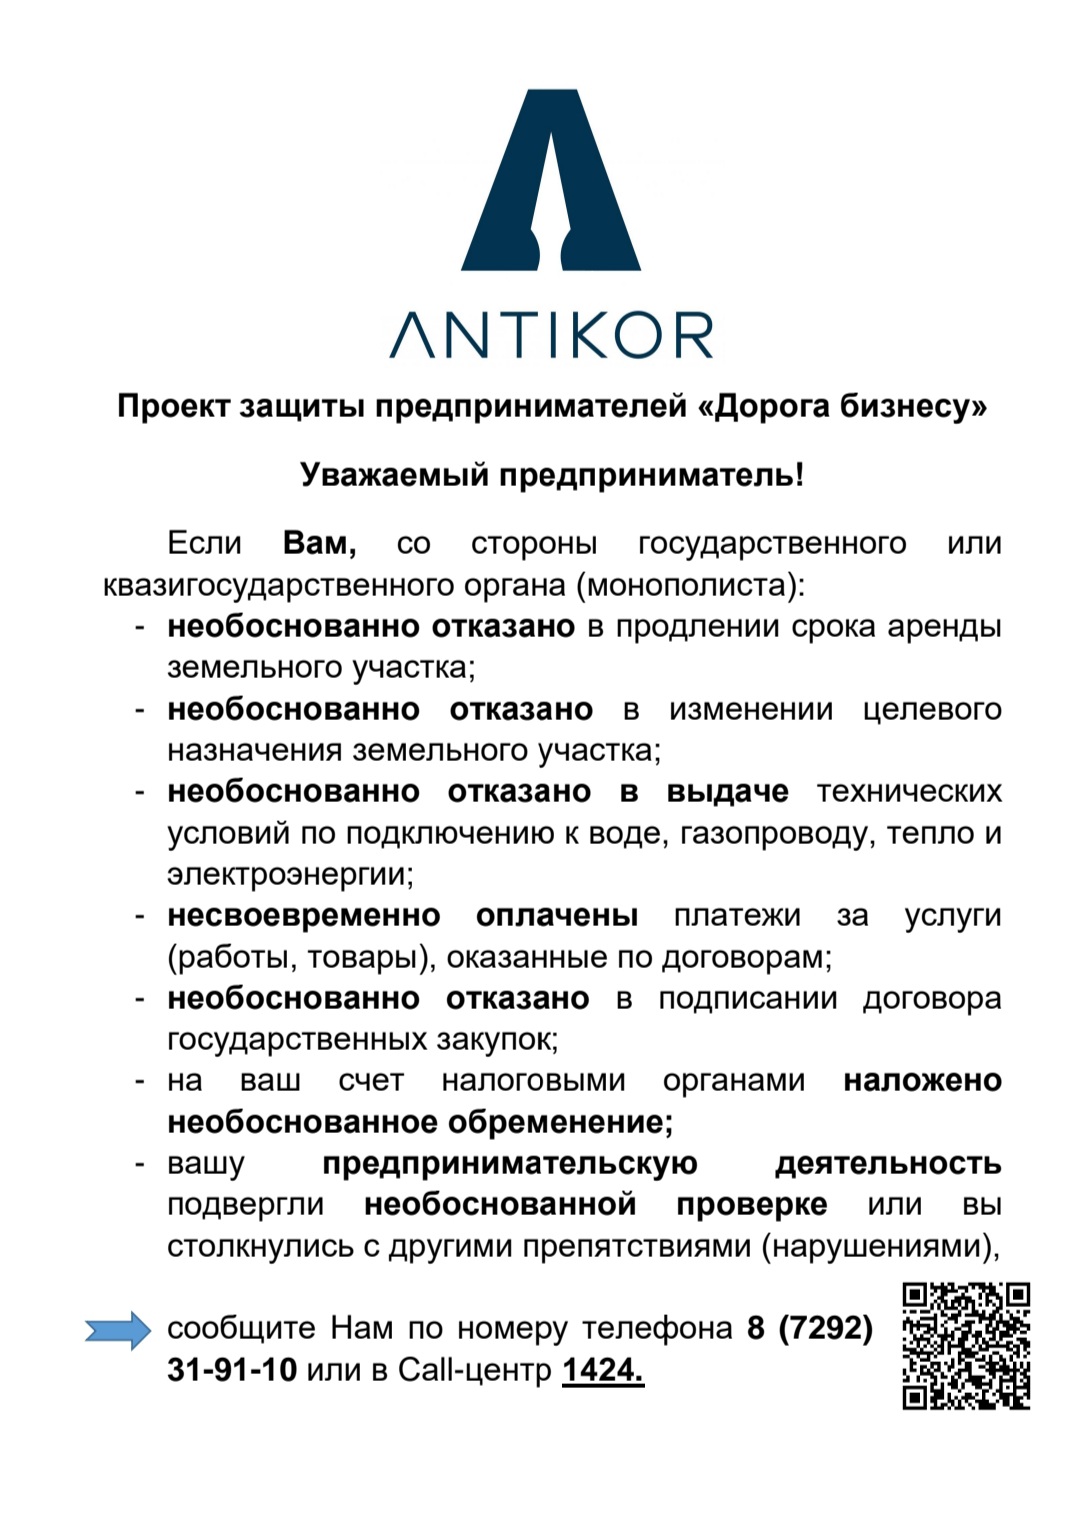 Проект защиты предпринимателей "Дорога бизнесу"  Антикоррупционного агентства Республики Казахстан